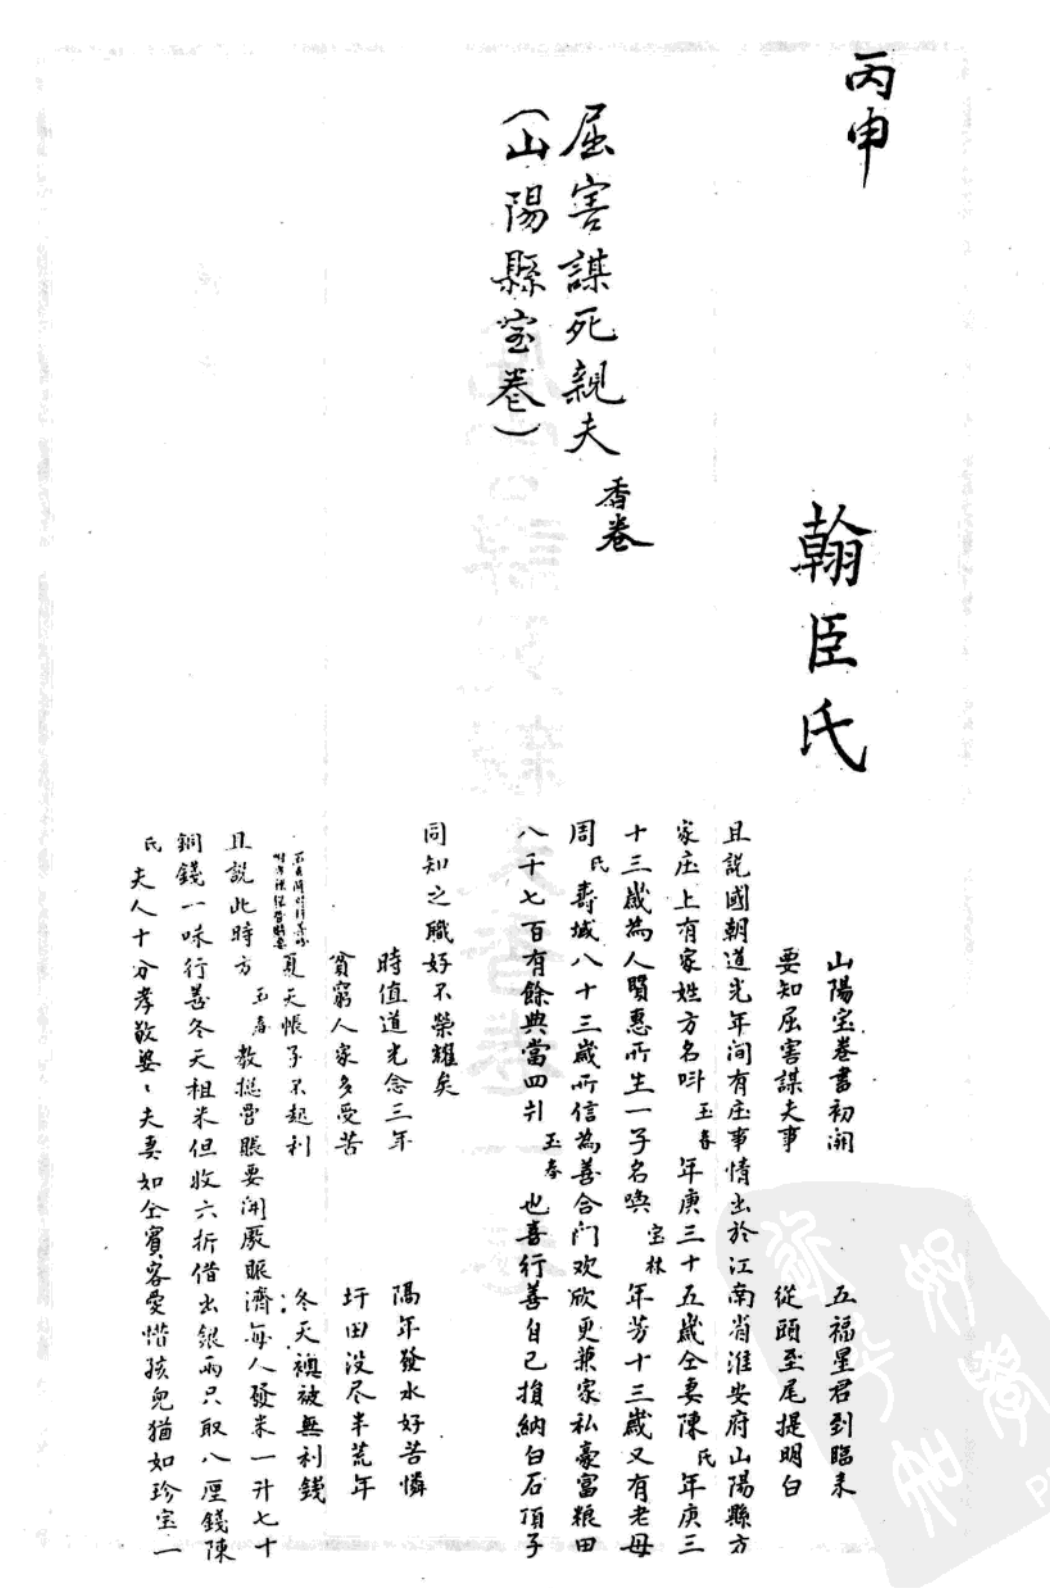 File:Quhai mousi qinfu xiangjuan (front page).png